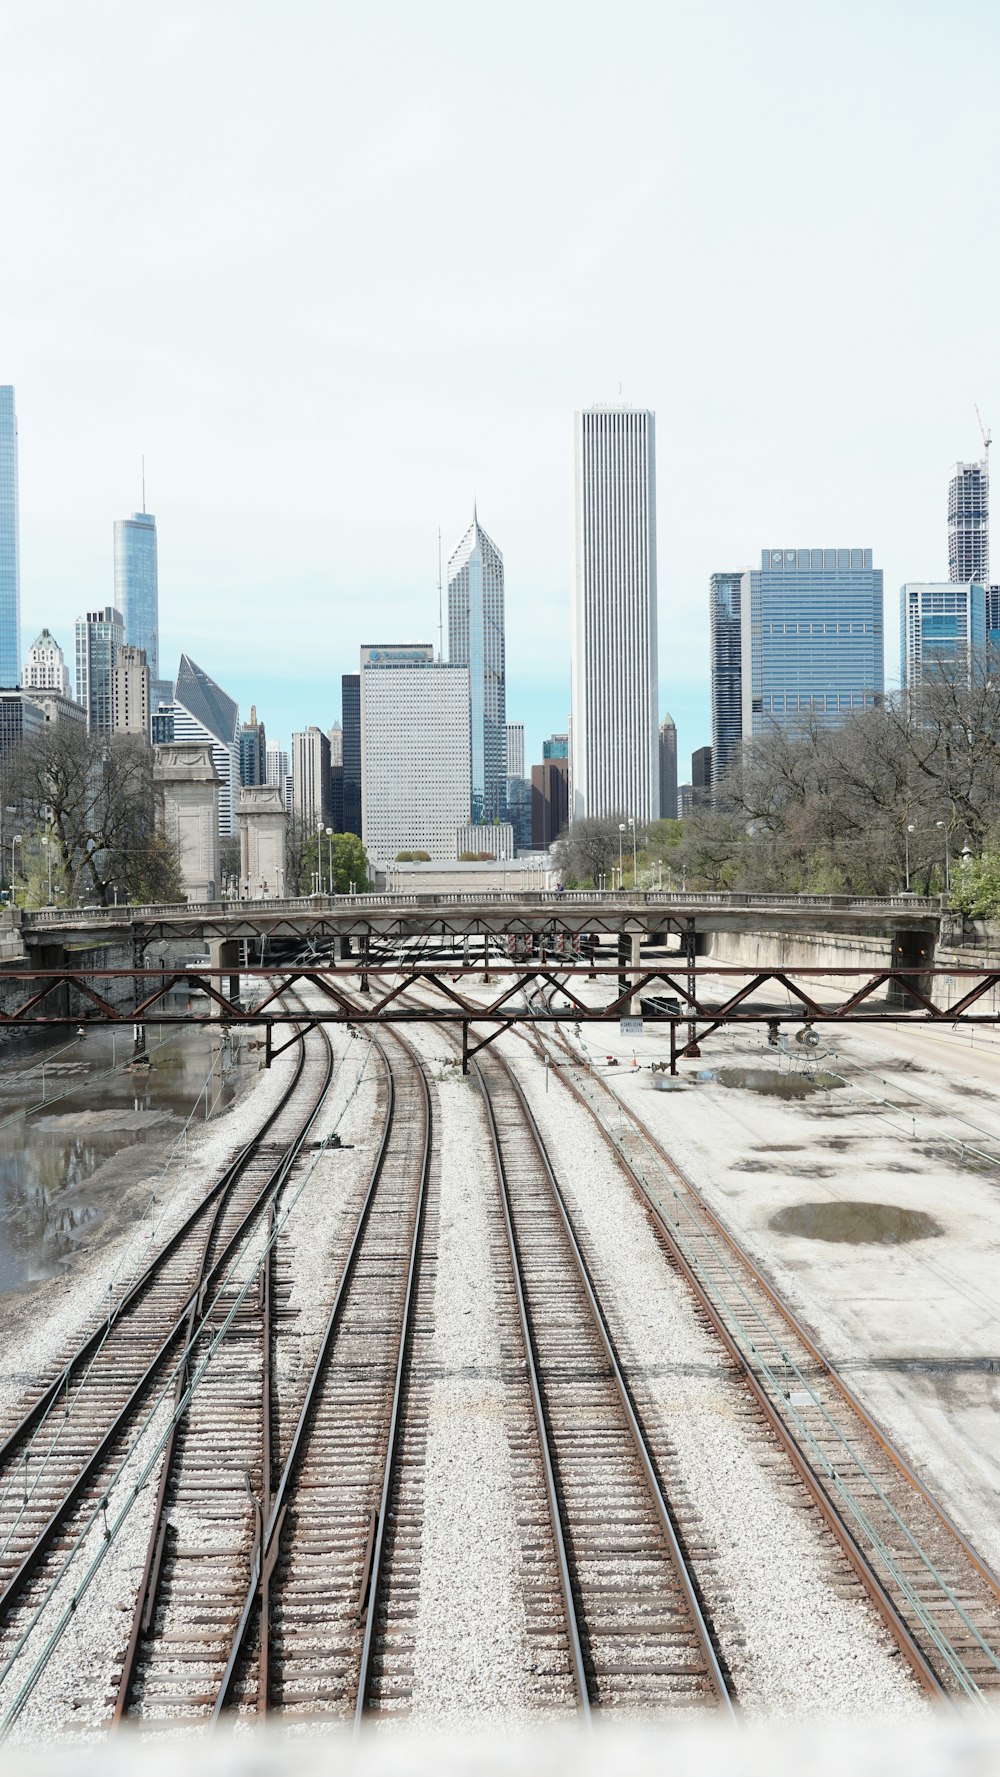 Una vista de una vía de tren con una ciudad al fondo